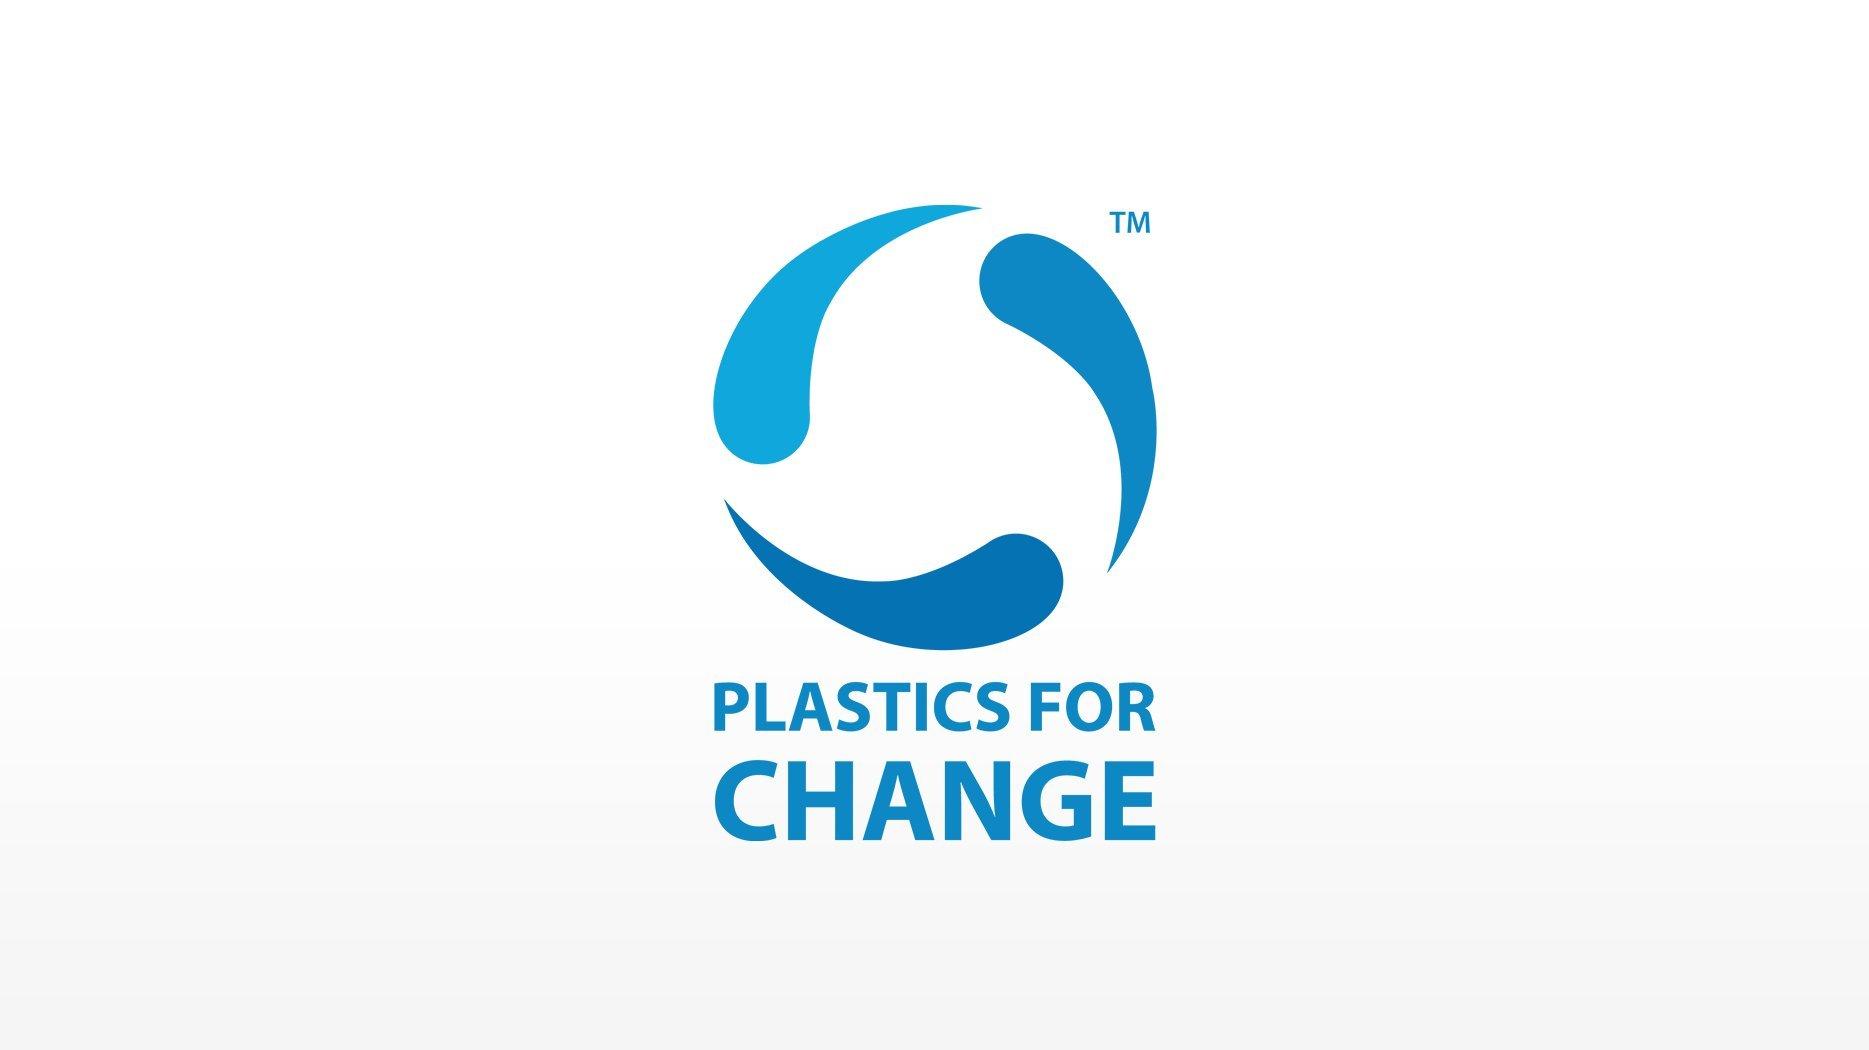 شعار كاتريس الاستدامة والمسؤولية الاجتماعية البلاستيك من أجل التغيير